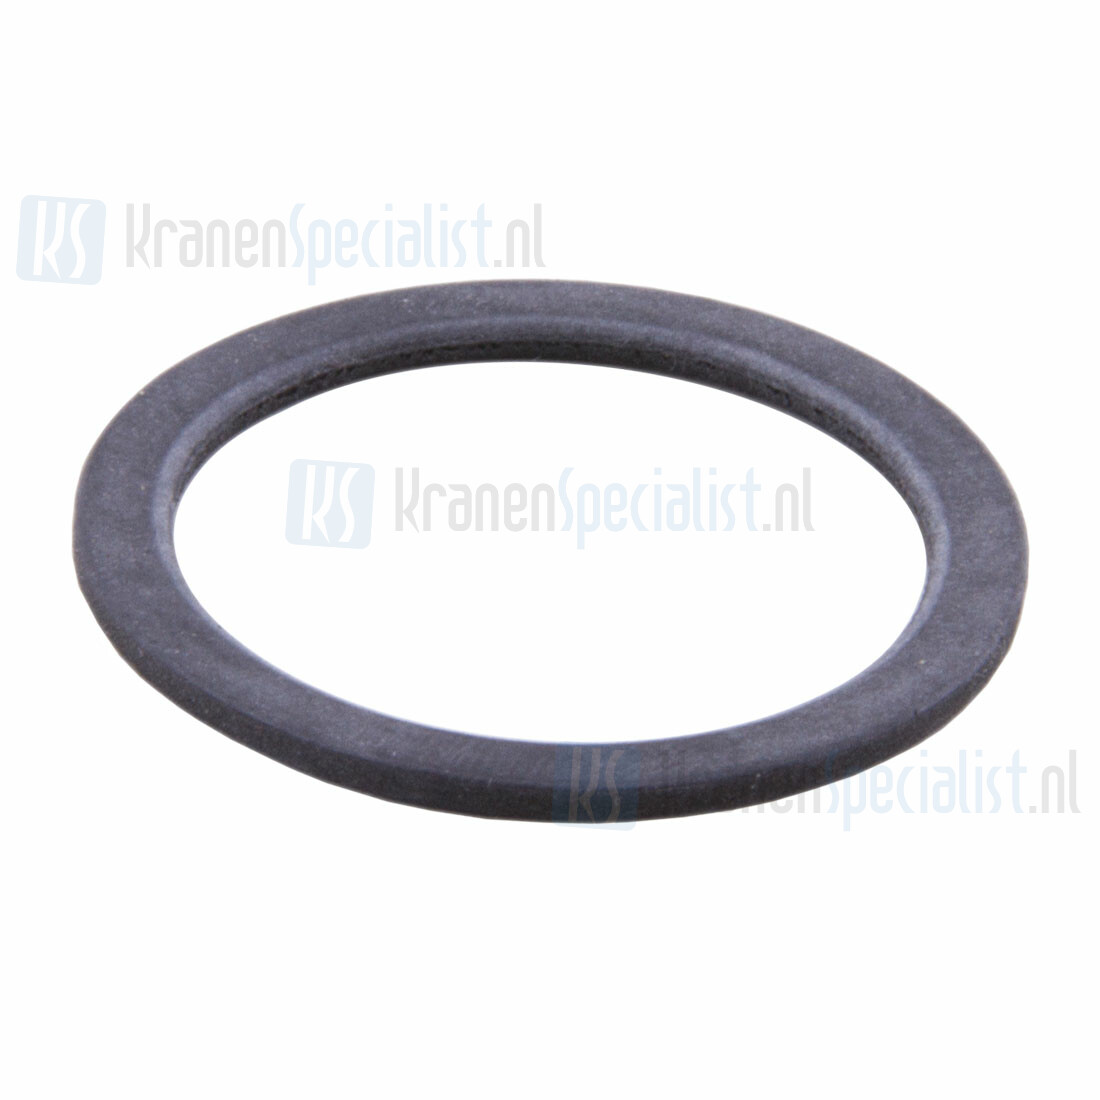 volwassene Verrast dutje Viega vlakke ring 6/4" voor gootsteen sifon 45mm bu-36mm bi x 2mm zwart  rubber